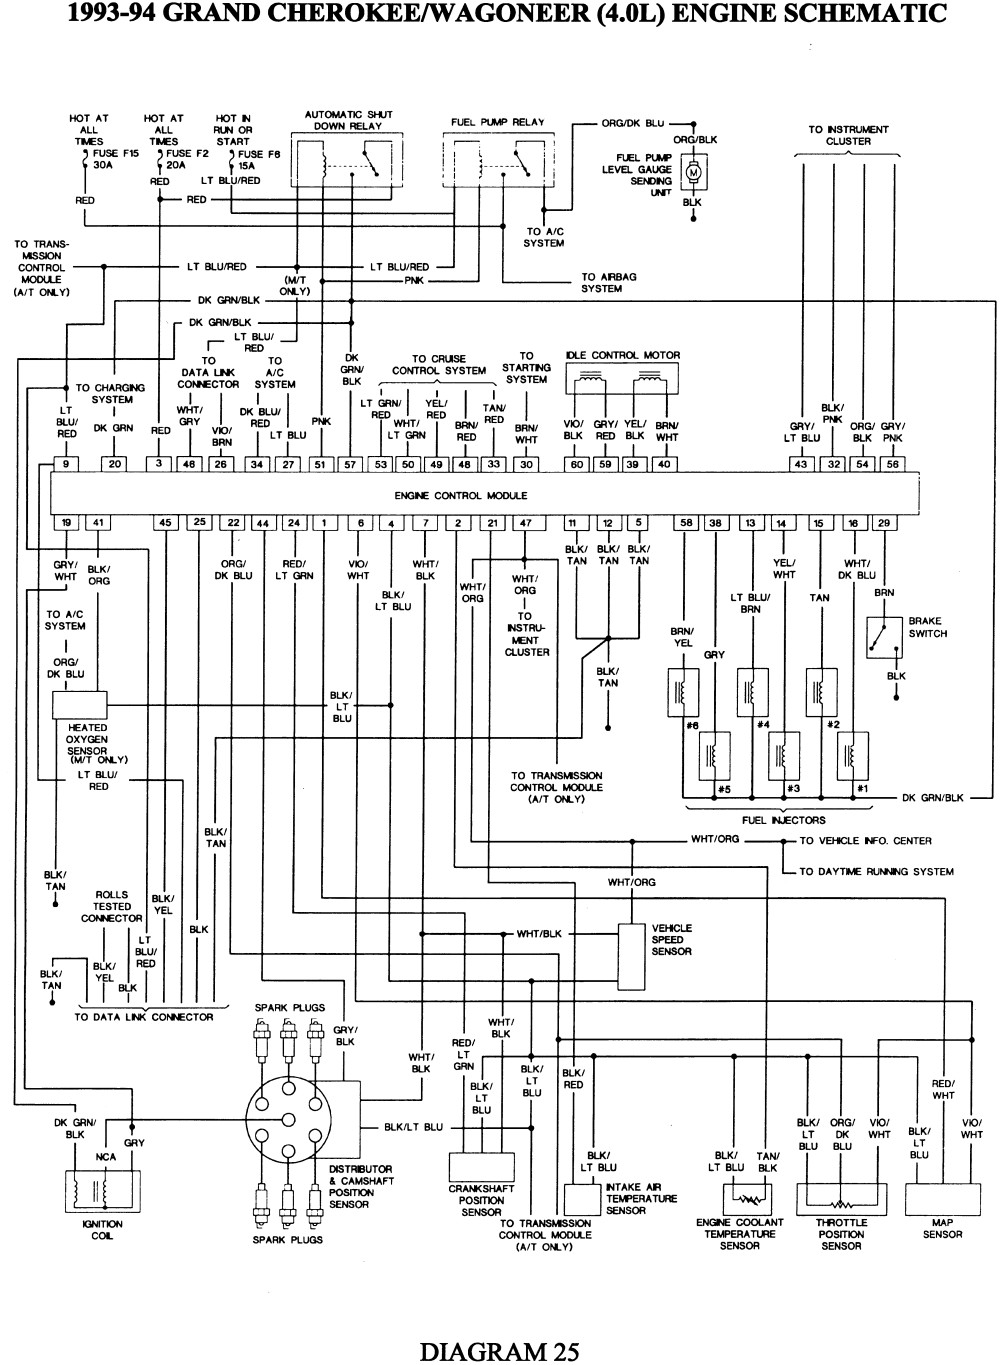 à¸à¸¥à¸à¸²à¸£à¸à¹à¸à¸ à¸²à¸£à¸¹à¸à¸ à¸²à¸à¸ªà¸³à¸ à¸£à¸±à¸ 1999 jeep grand cherokee TRANSMISSION wiring diagram